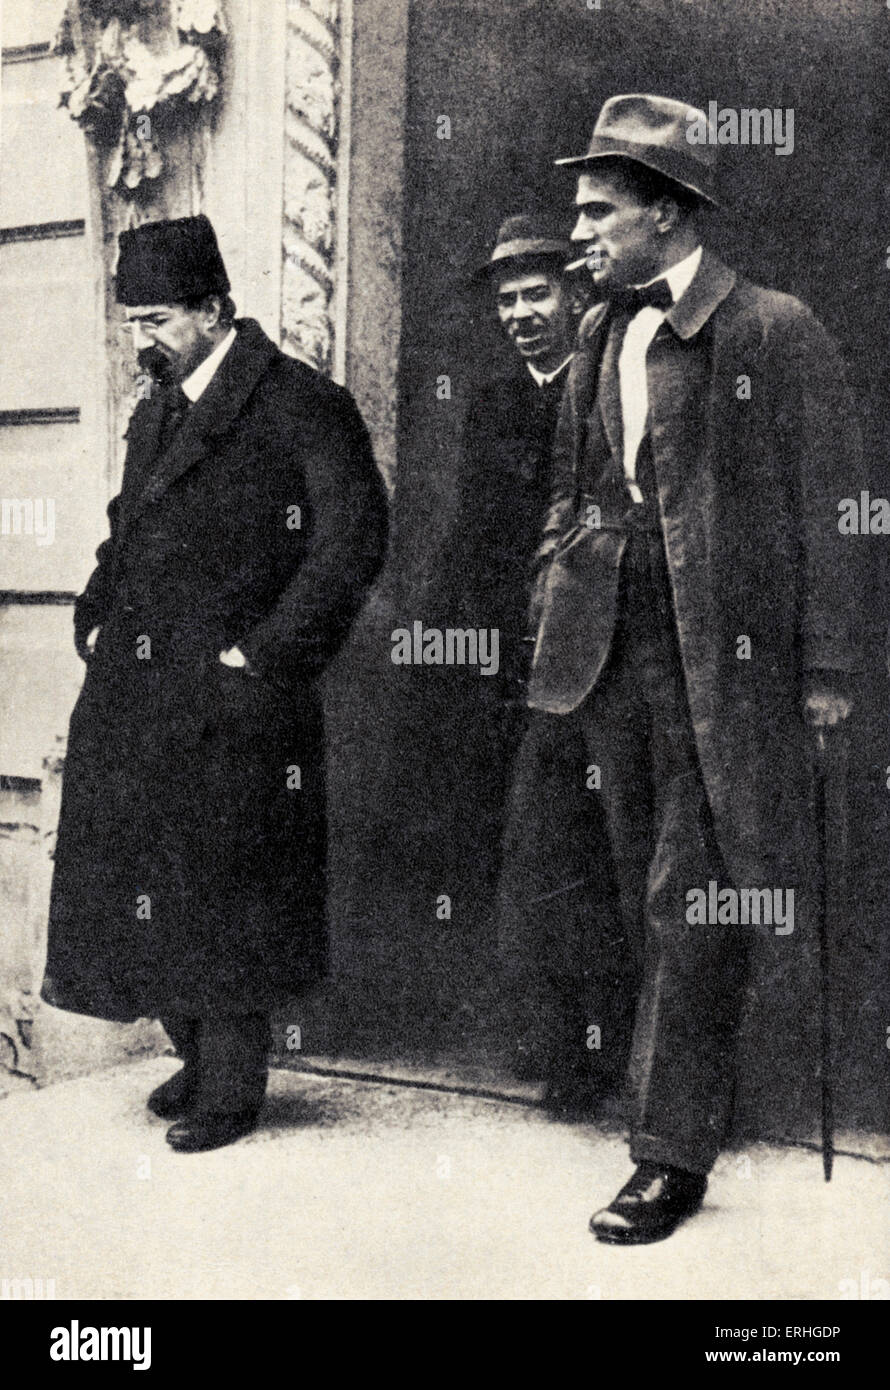 Sowjetischen Schriftsteller Vladimir Mayakovsky mit Bildungsminister Anatoli Vasilevich Lunacharsky (links) - eingesetzt von Lenin zu kontrollieren Stockfoto